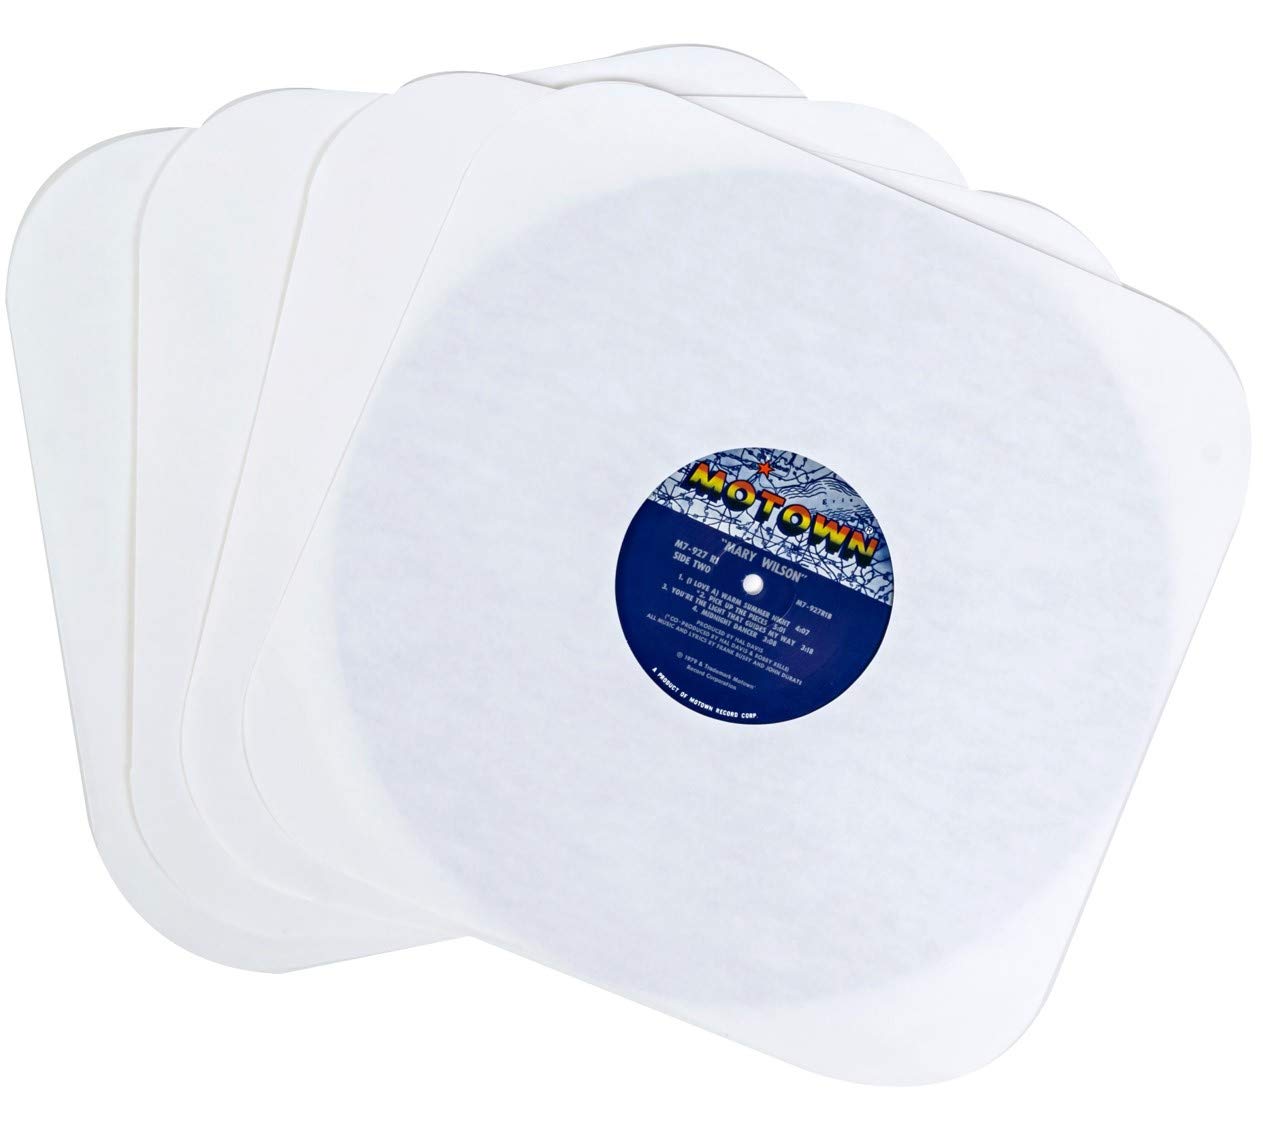 Fundas de papel interiores para discos de vinilo, cubiertas de protección premium sin ácido para álbumes LP de 12 pulgadas, paquete de 50